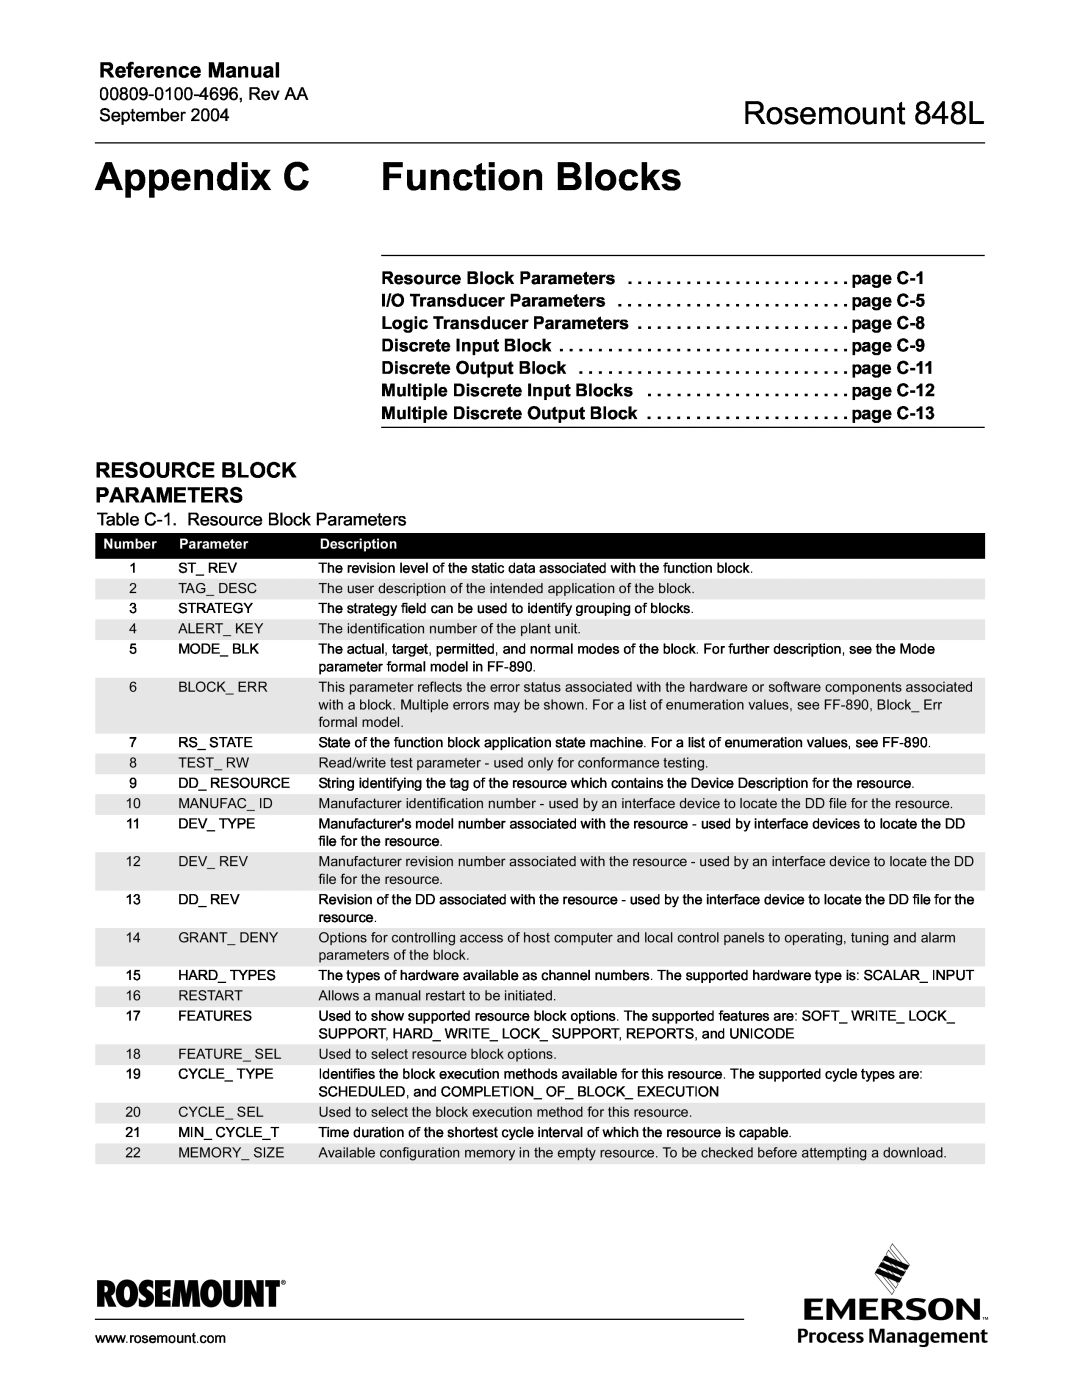 Emerson manual Appendix C Function Blocks, Resource Block Parameters, Rosemount 848L, Reference Manual 